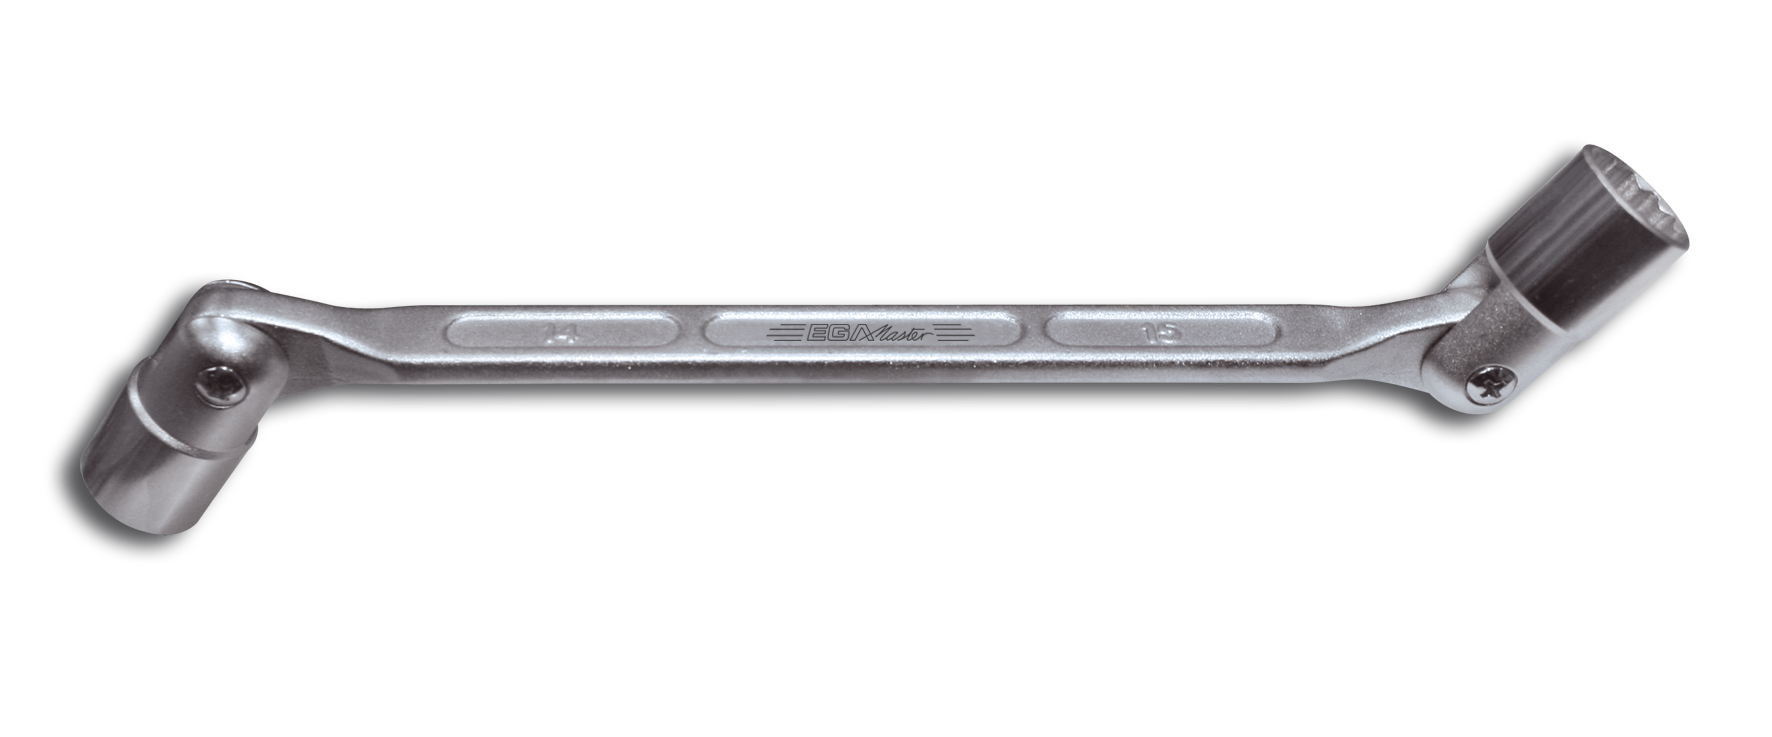 Socket Wrench Transparent Background PNG Image